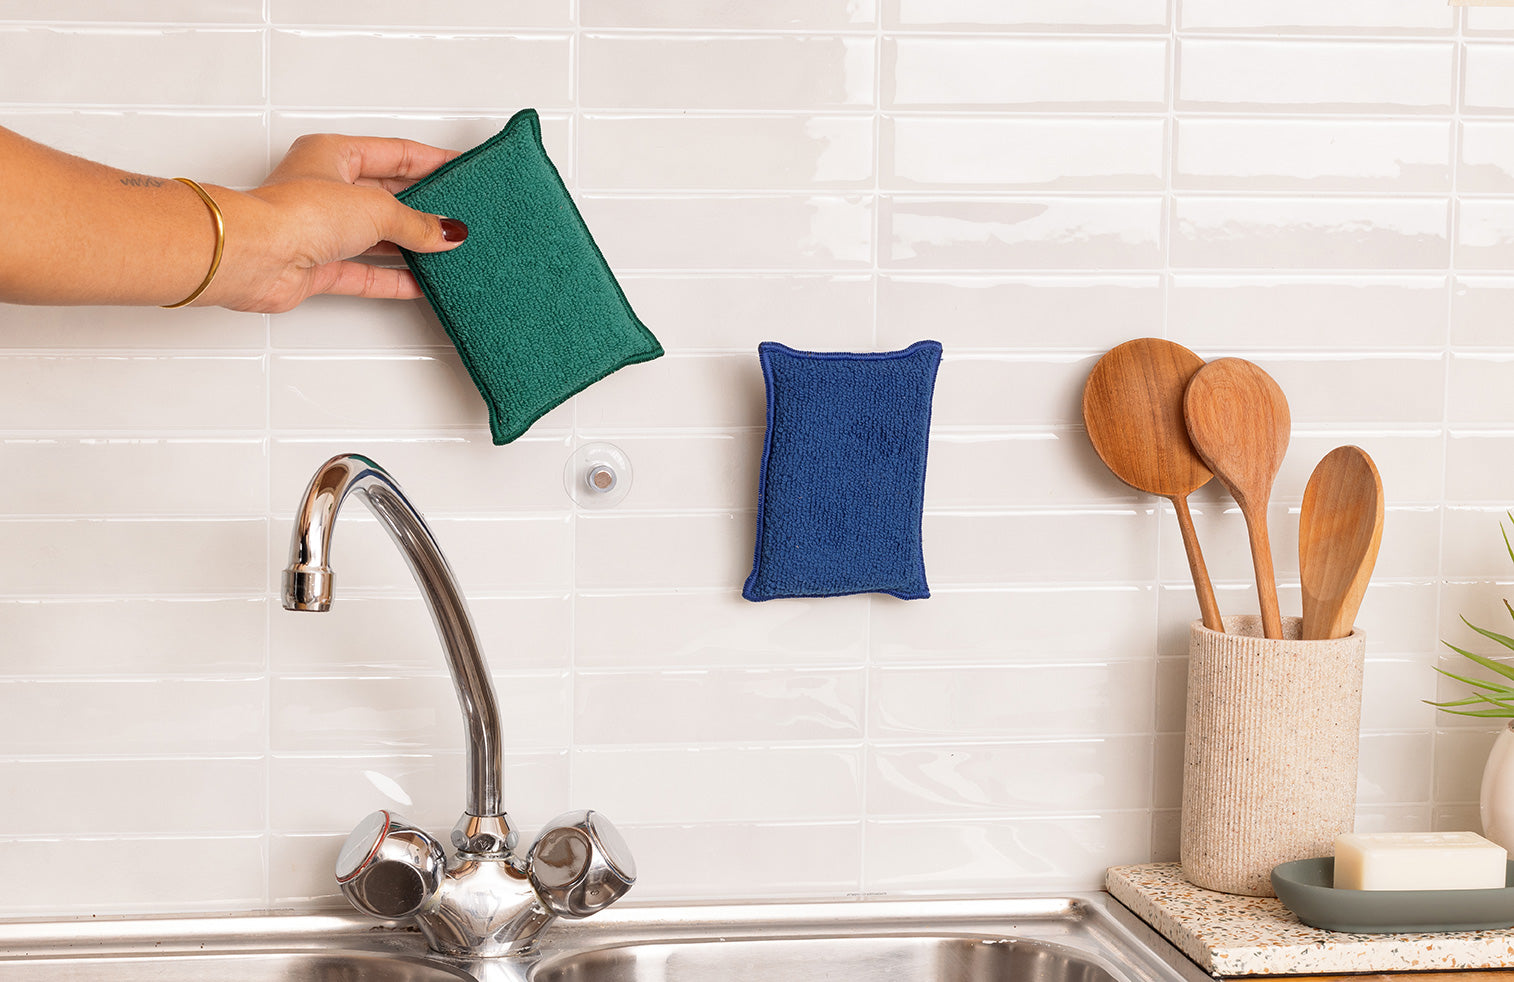 Éponge lavable : Guide d'achat et conseils pratiques pour un